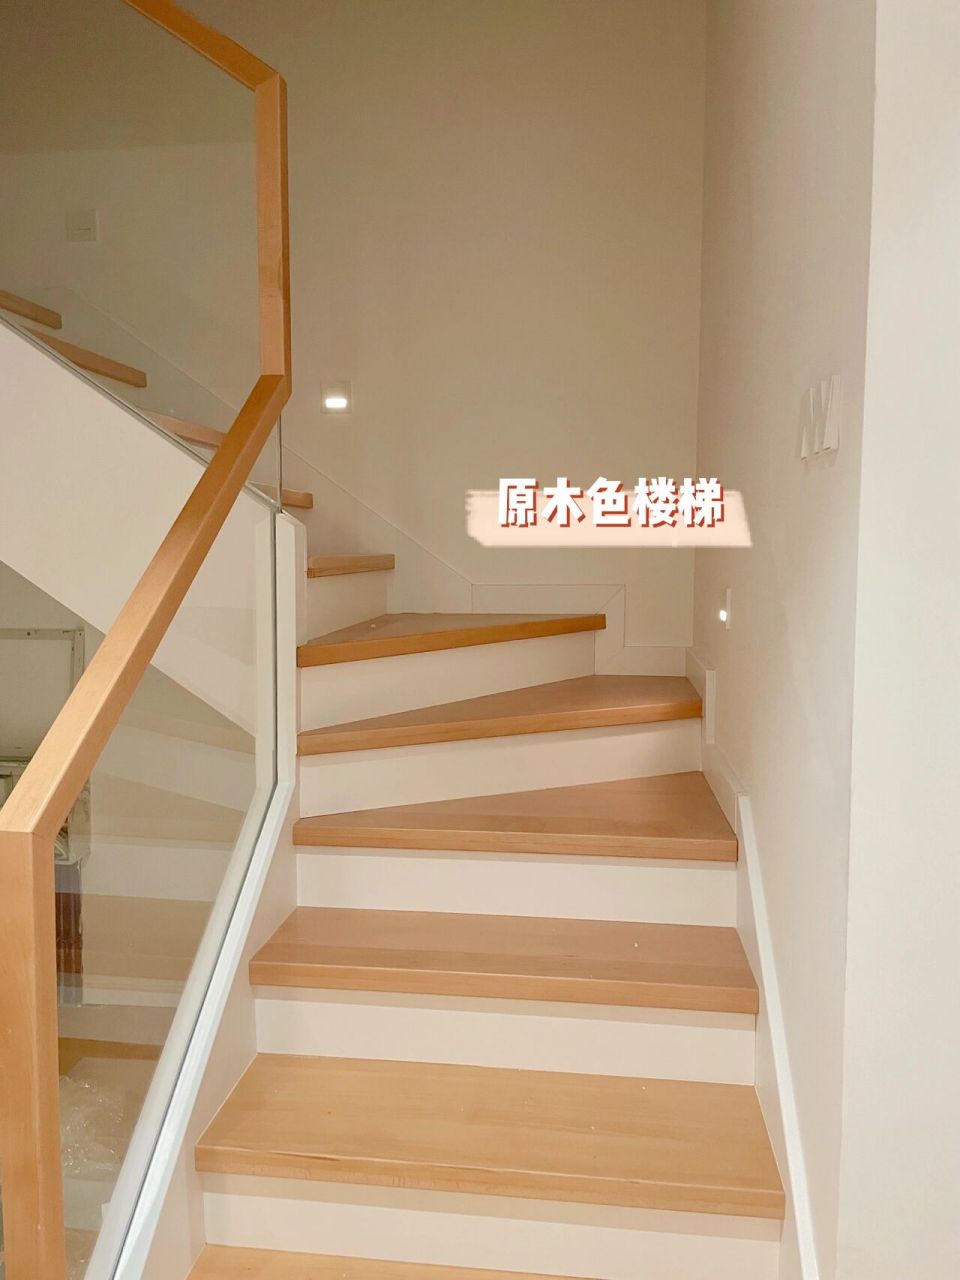 复式原木色楼梯77超白玻璃扶手 我的楼梯是榉木实木材质,实木楼梯